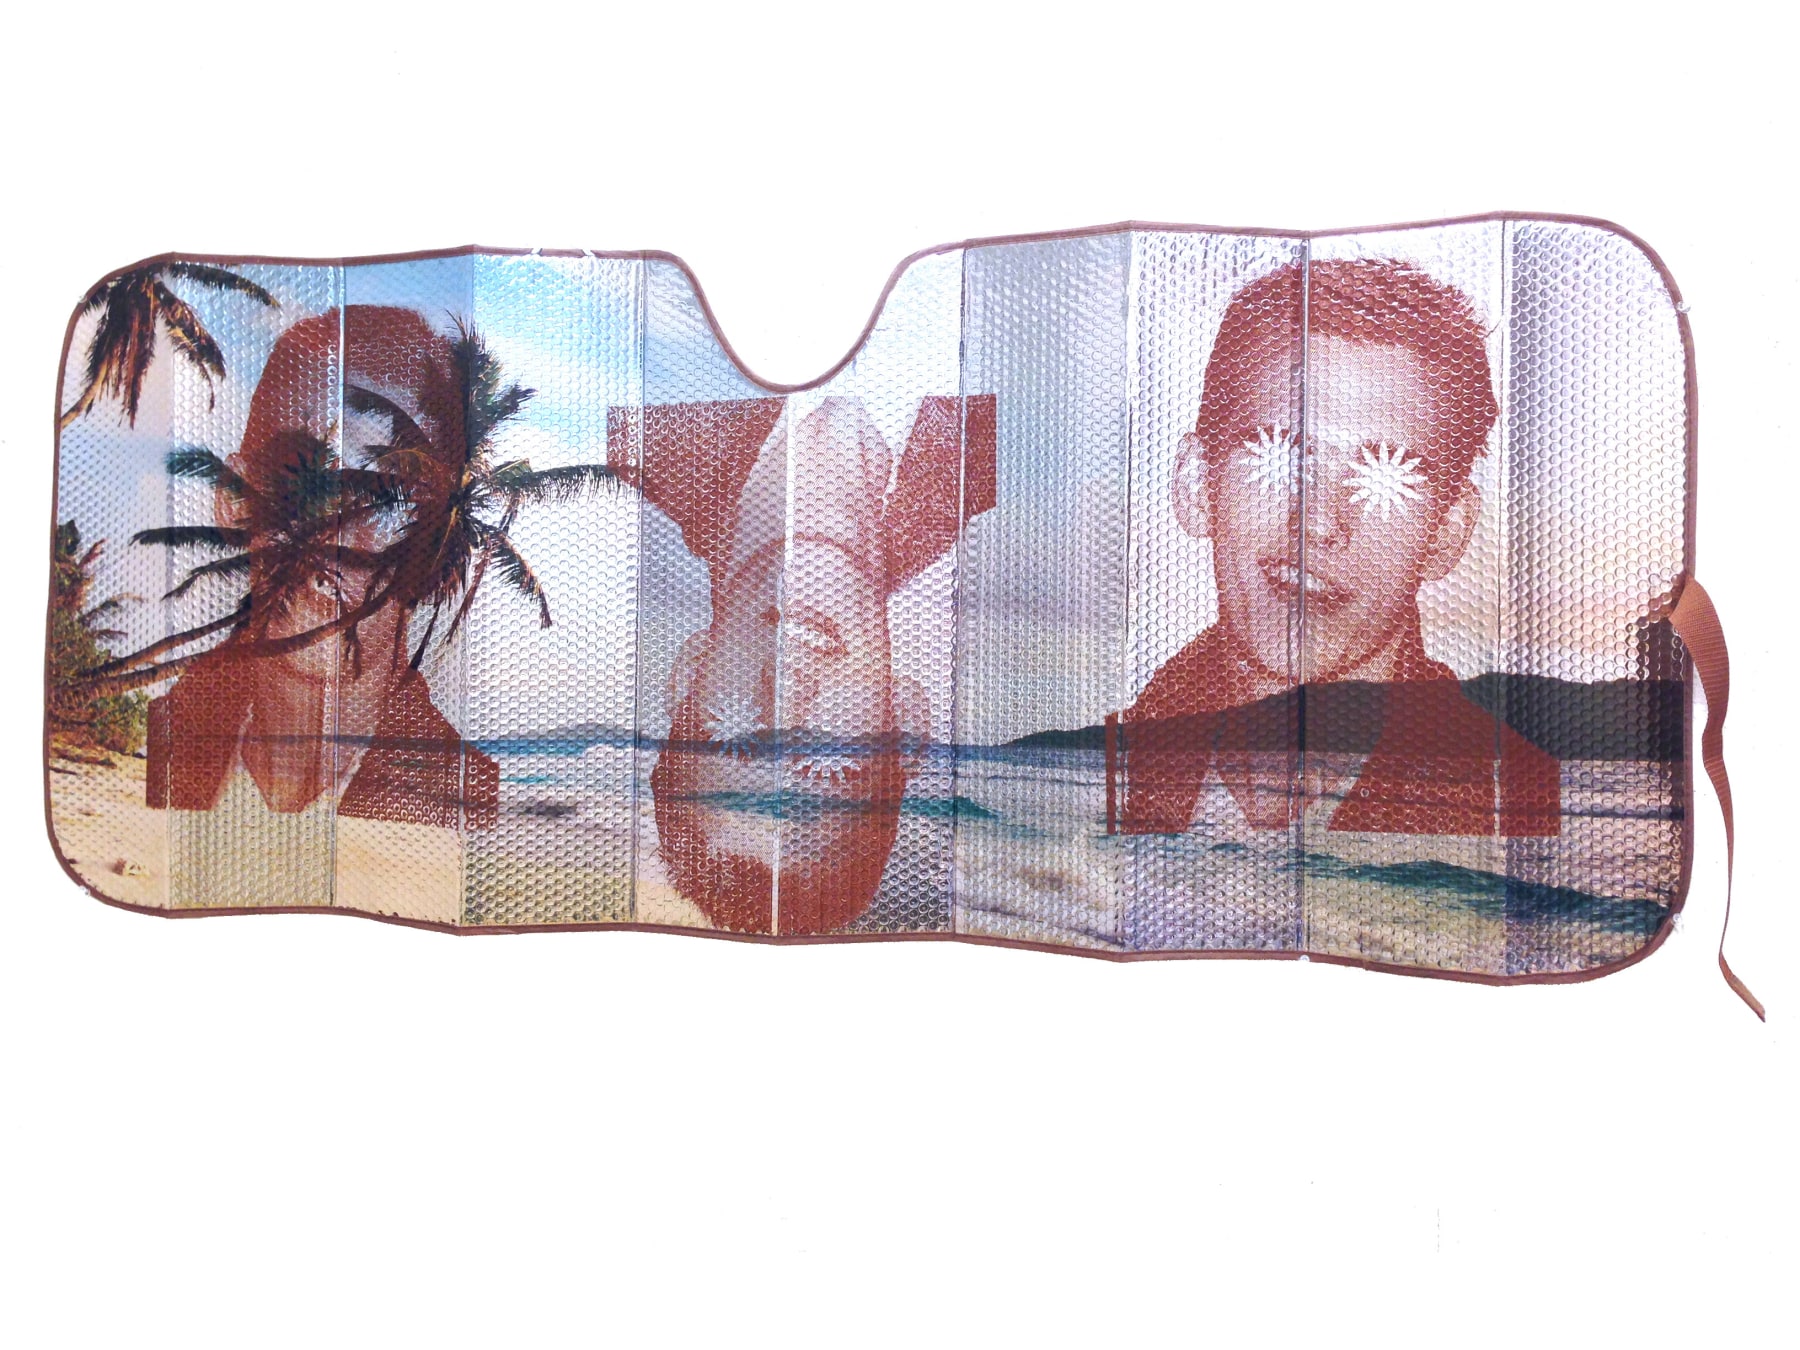 CHRIS WILLIFORD  Sunshade II (Honeymoon)  2015, screenprint and varnish on auto sunshade, 67 x 27 inches.